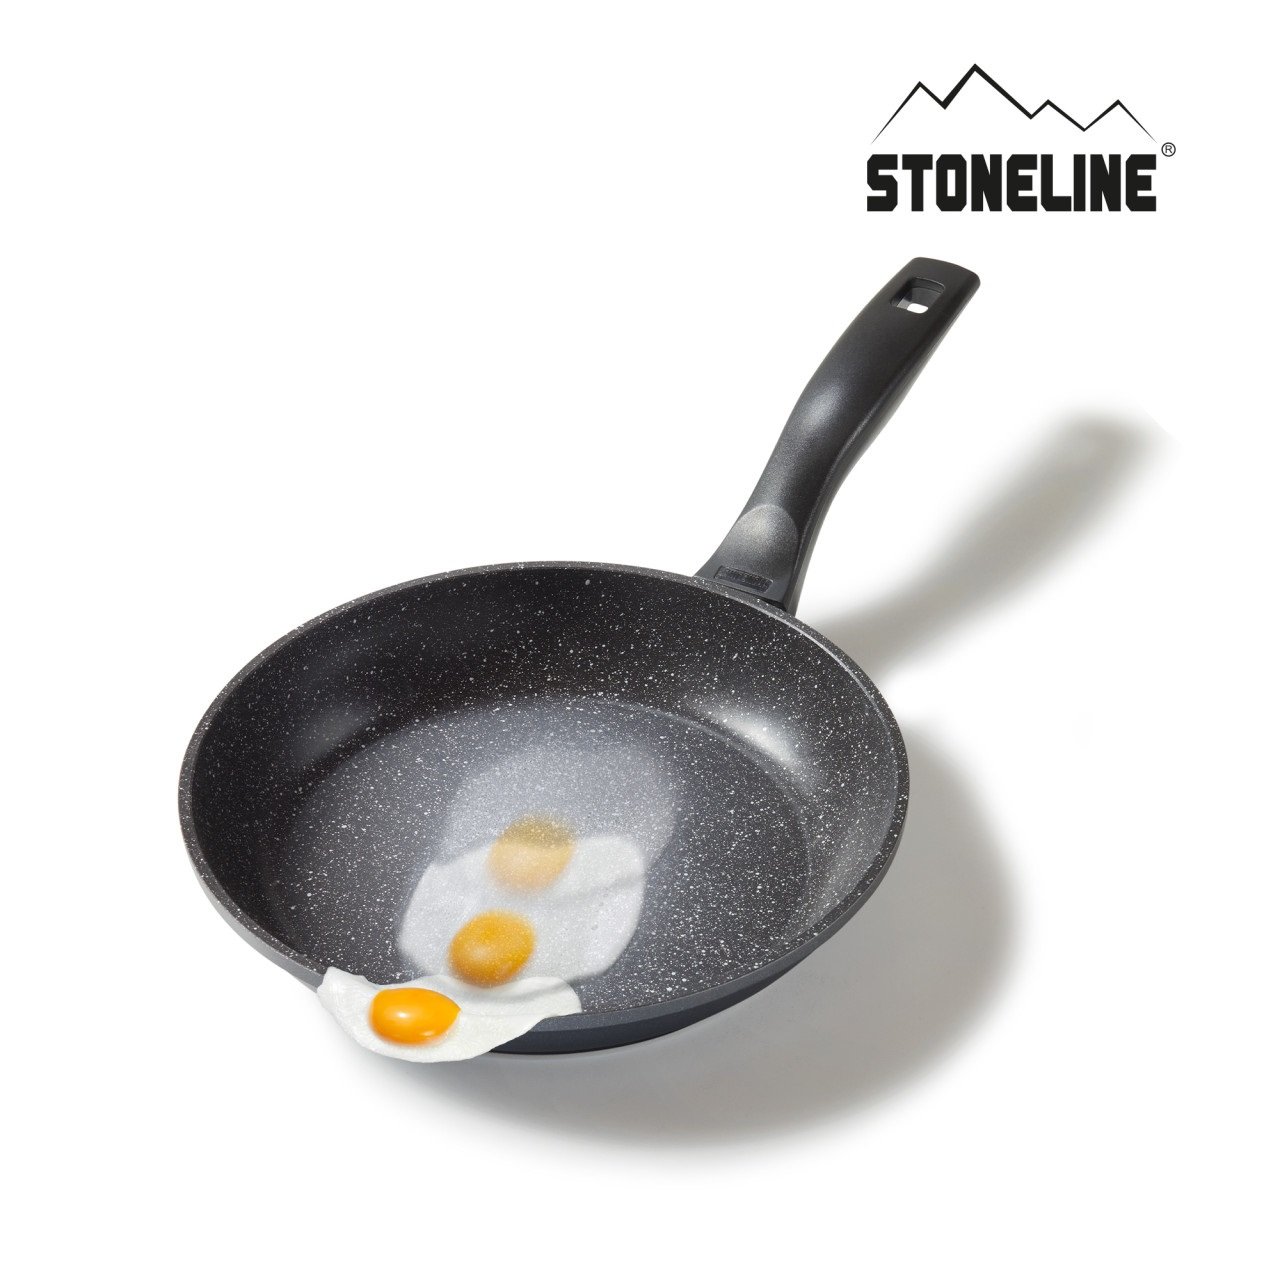 STONELINE® Kochgeschirr-Set 13-teilig mit Deckeln, beschichtete Töpfe & Pfannen Induktion geeignet